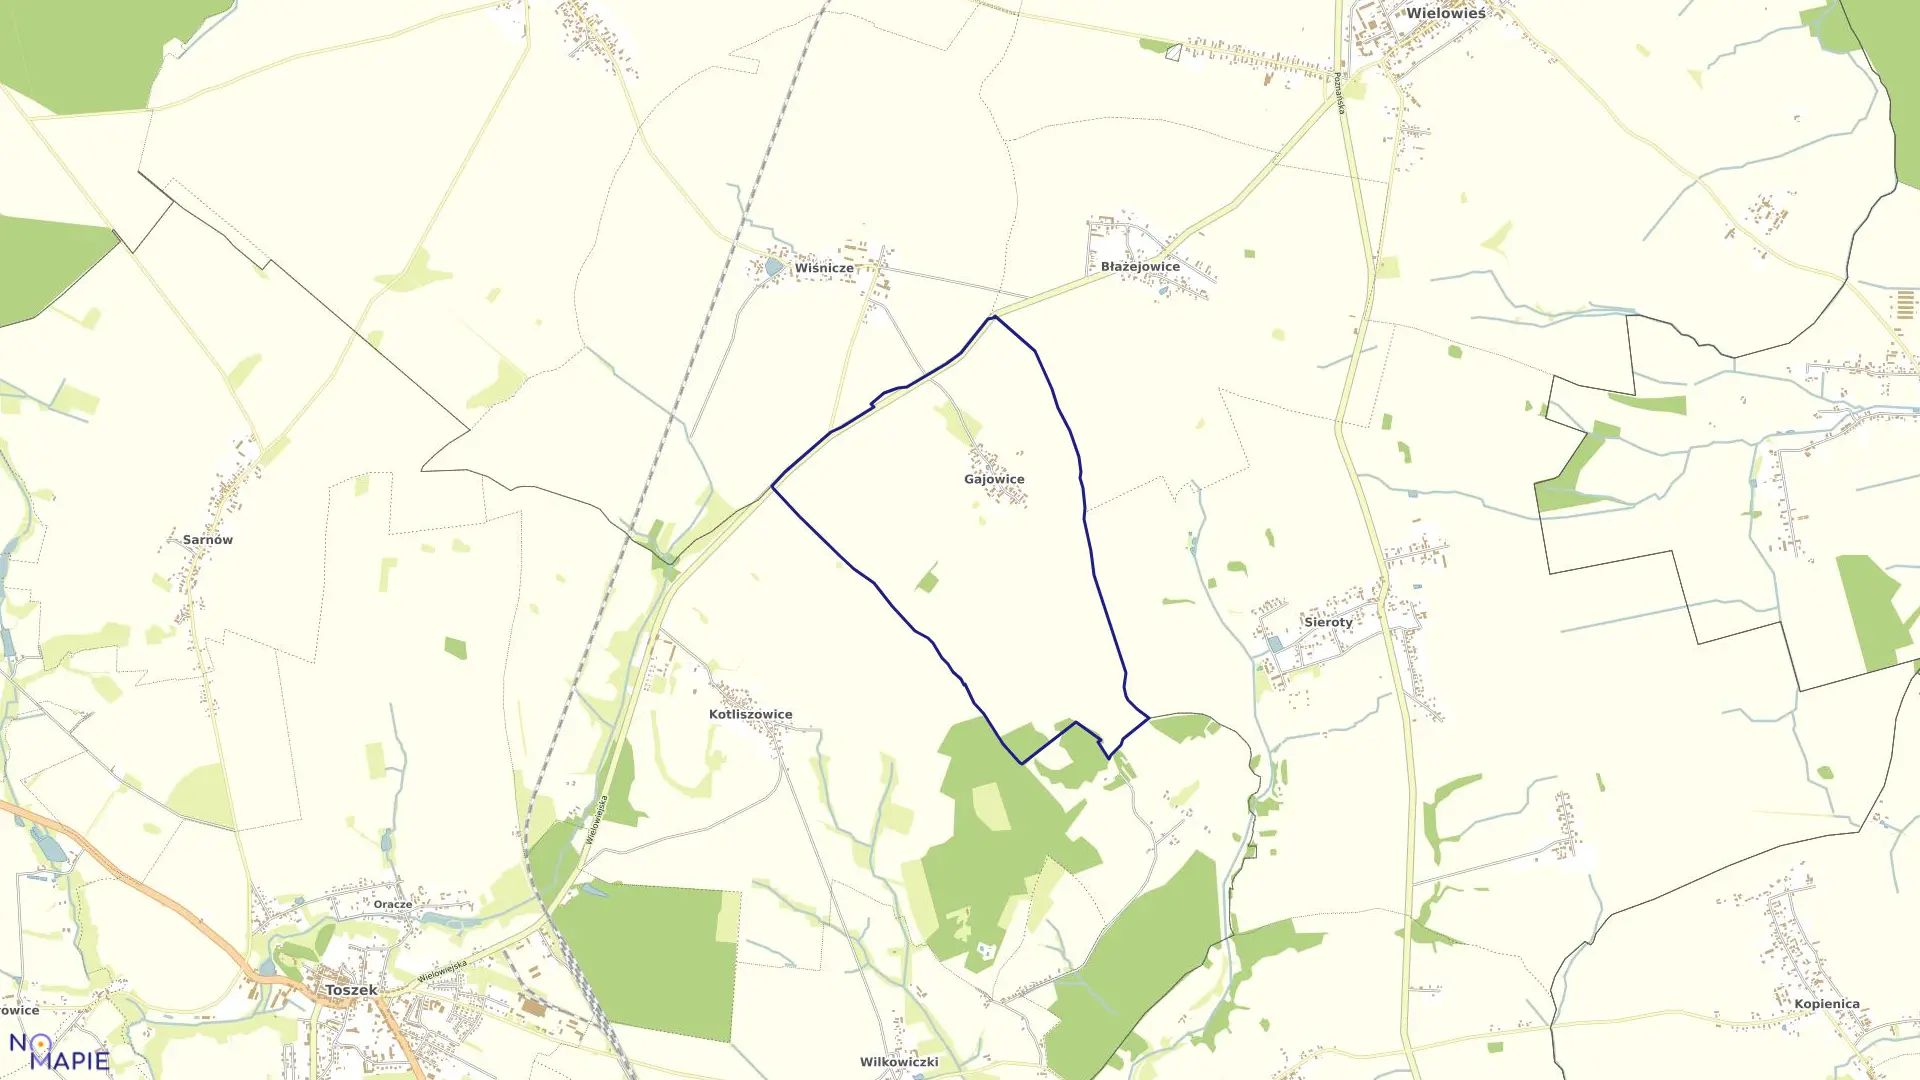 Mapa obrębu Gajowice w gminie Wielowieś